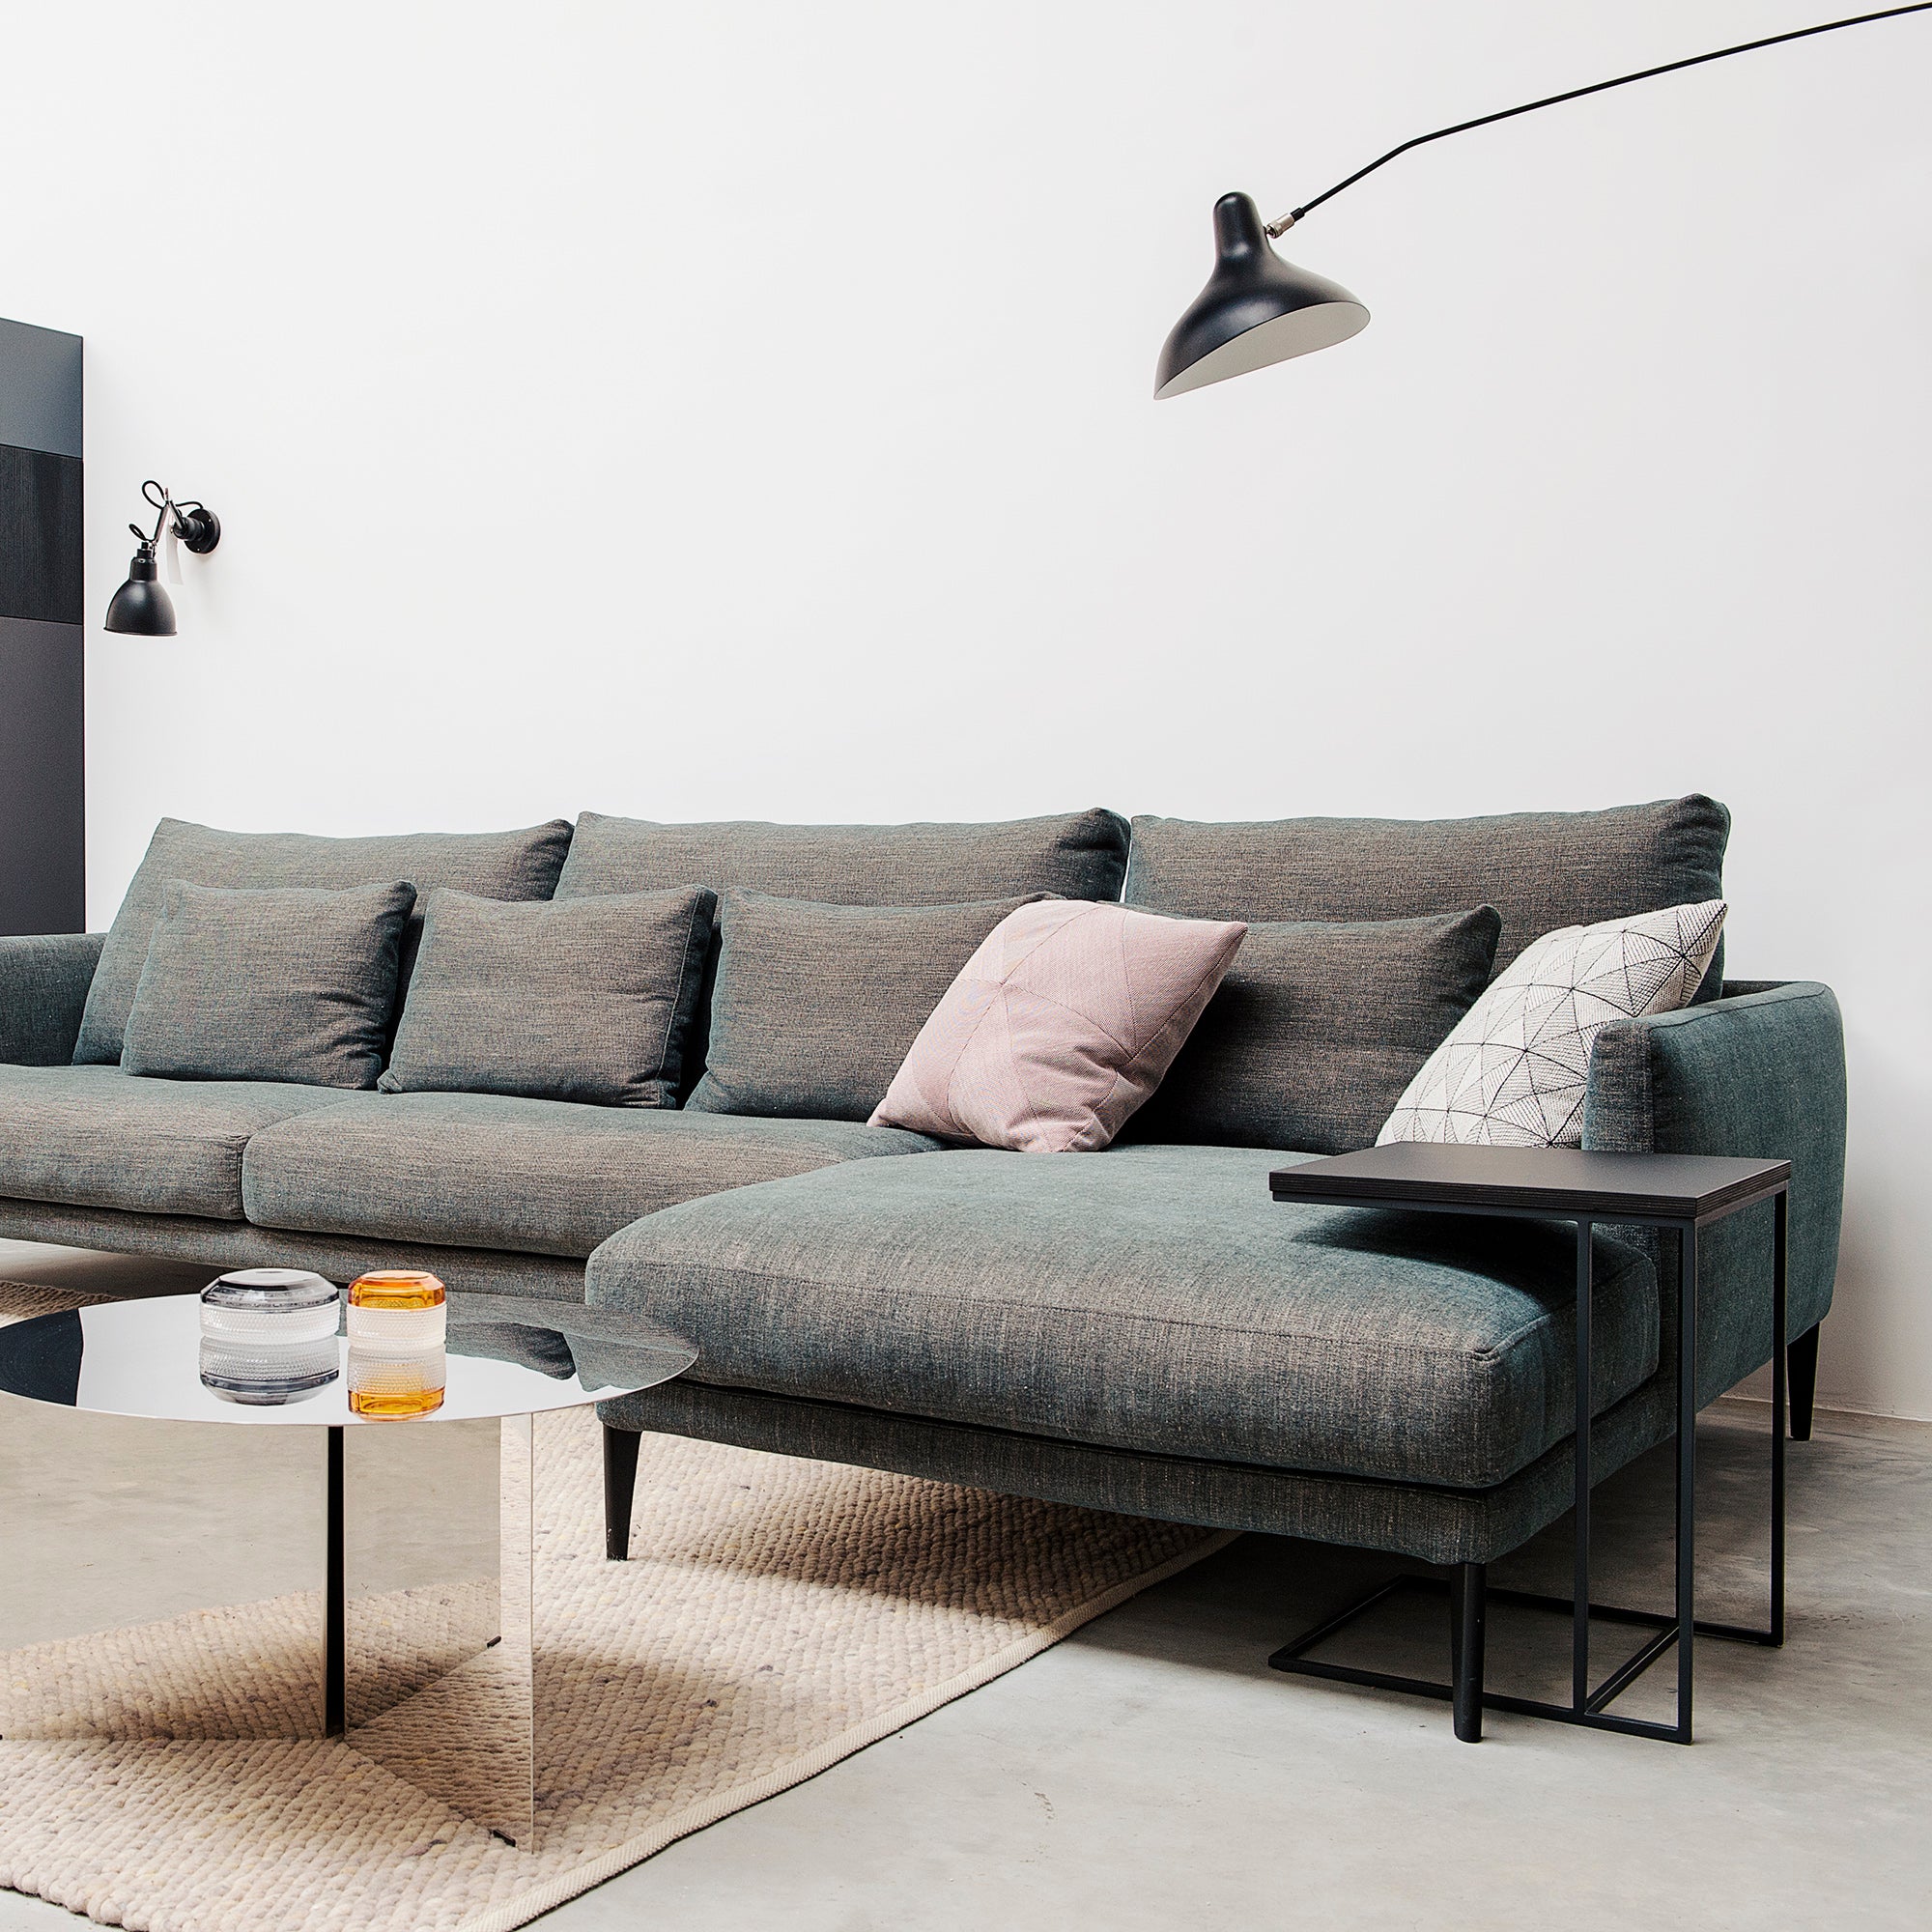 droog Lelie Gering Banken en Fauteuils - Topmerken design sofa's | Houtmerk